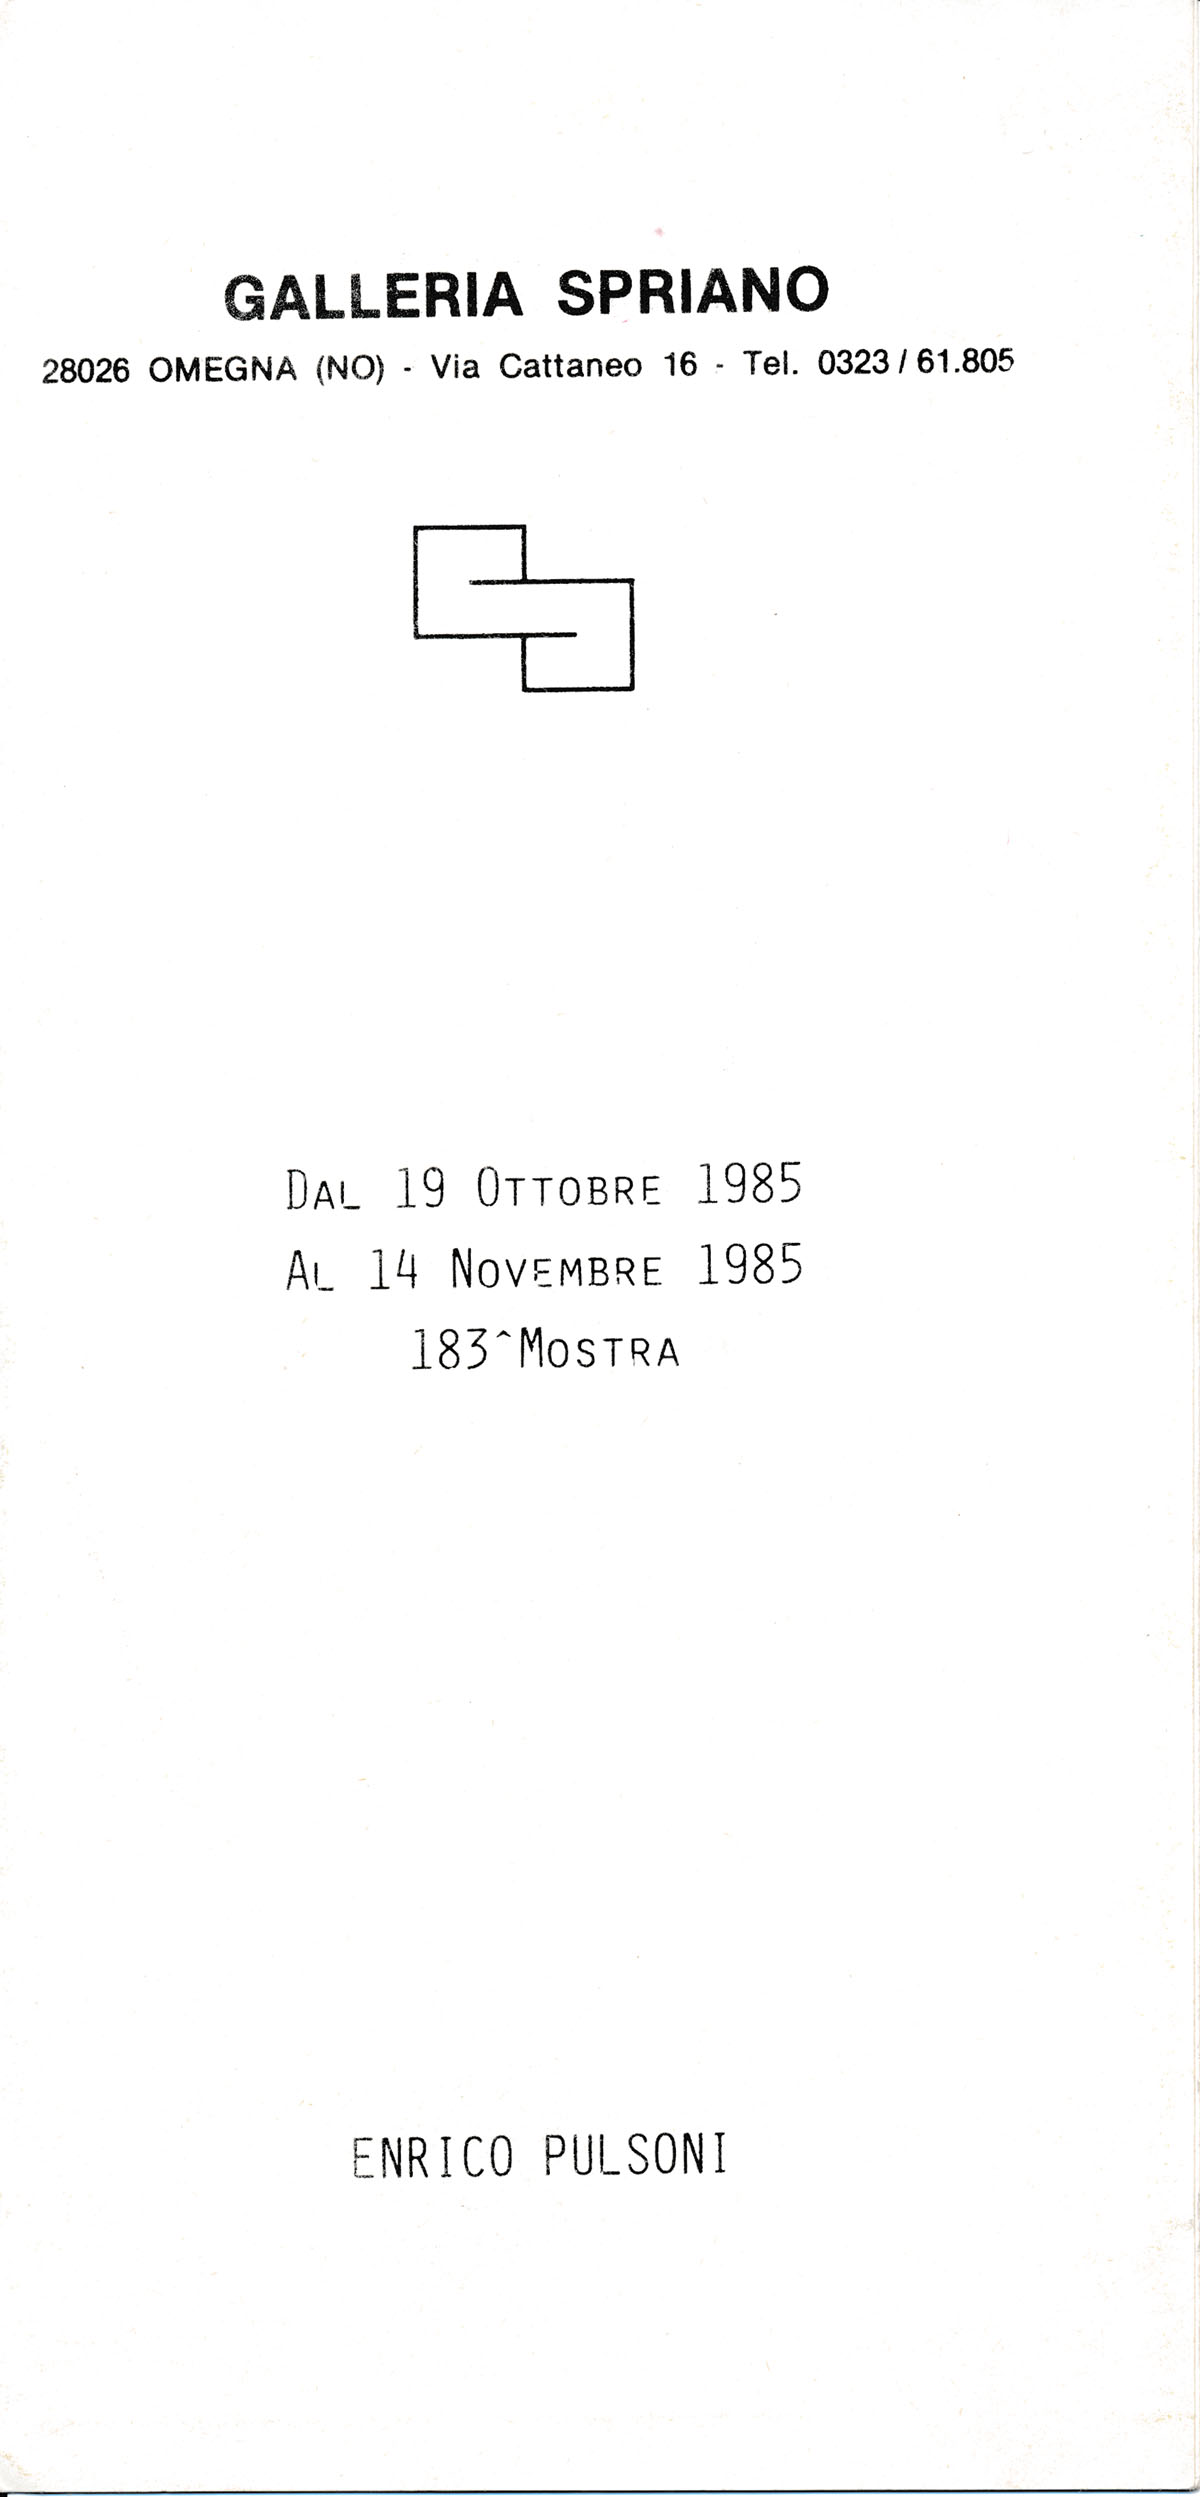 1985 Omegna Galleria Spriano